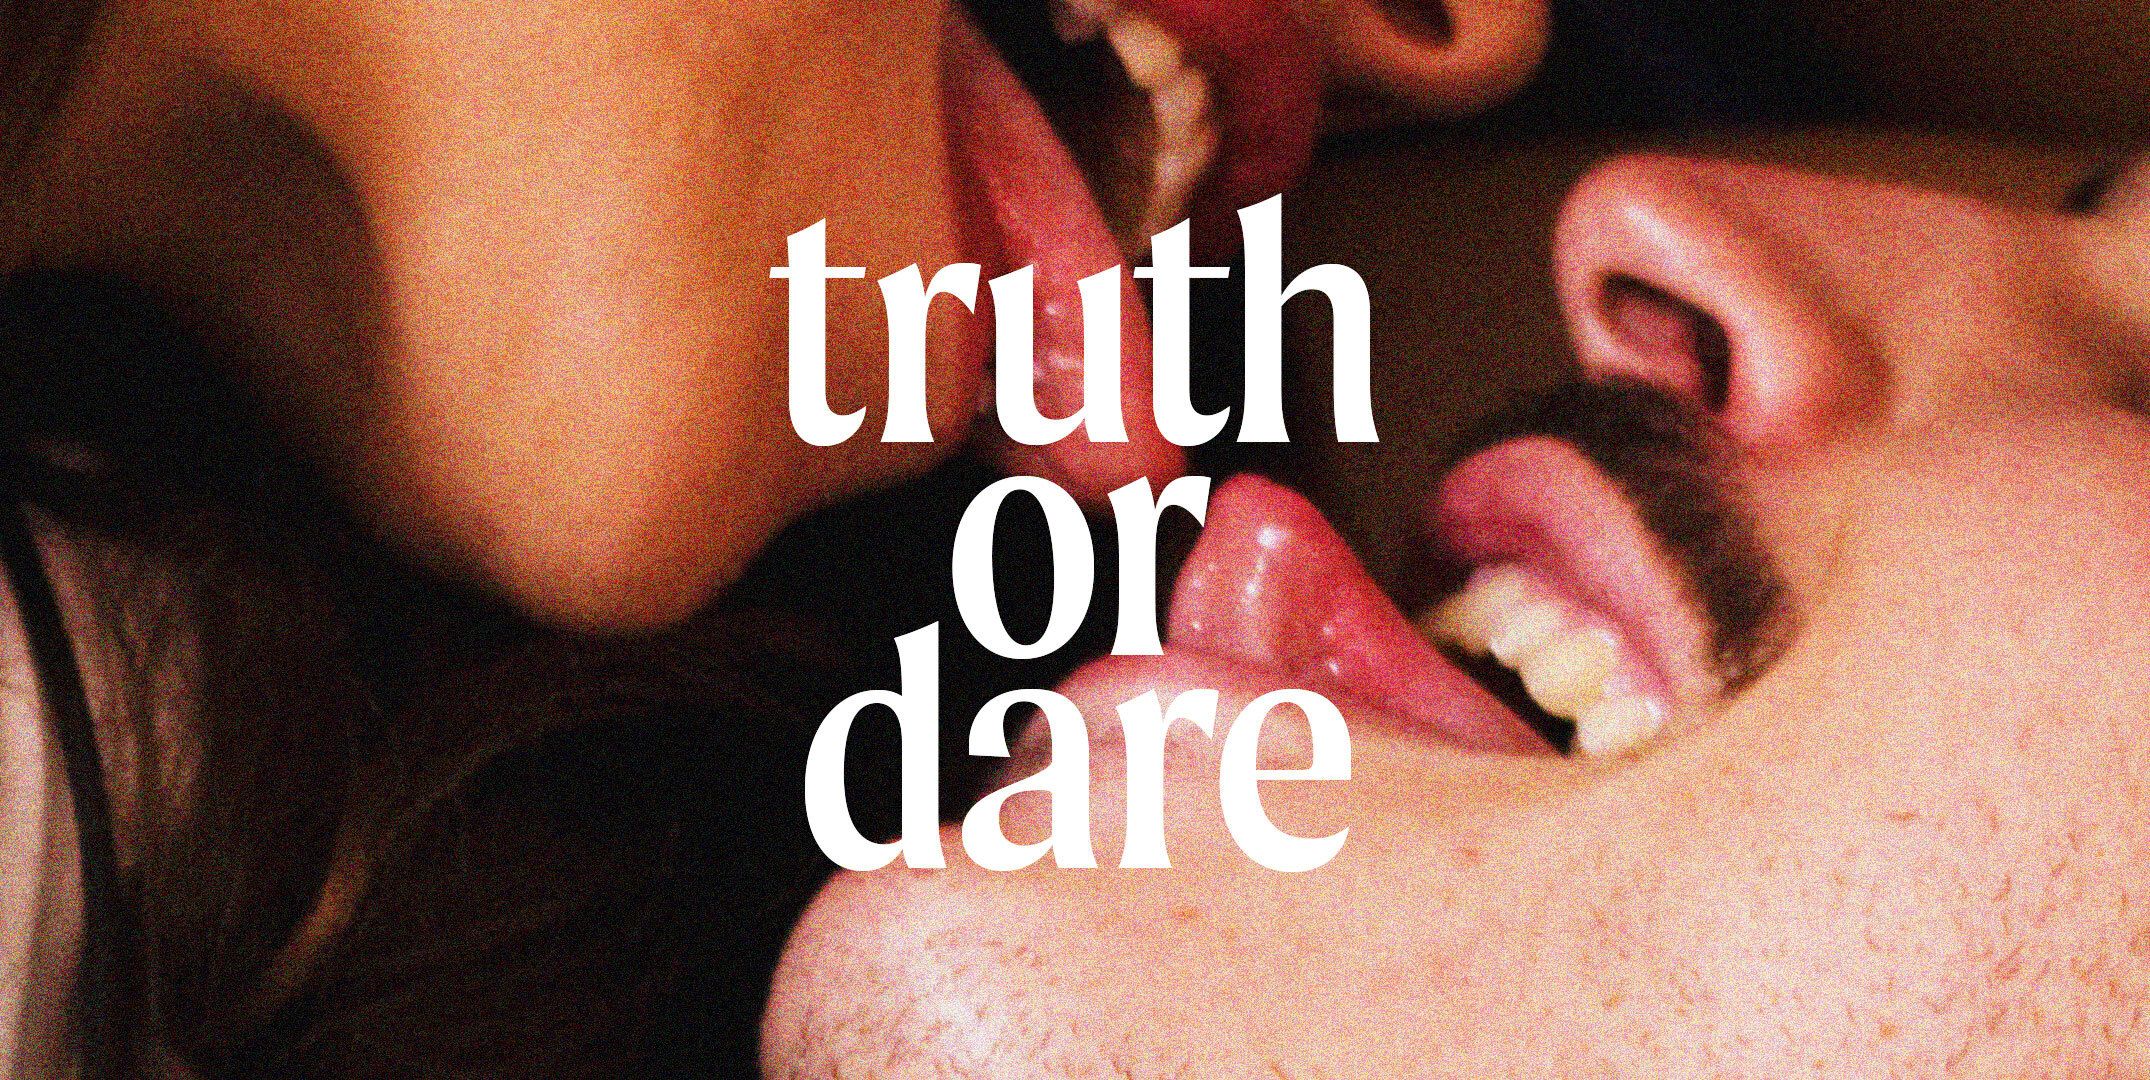 Truth or dare pics blog